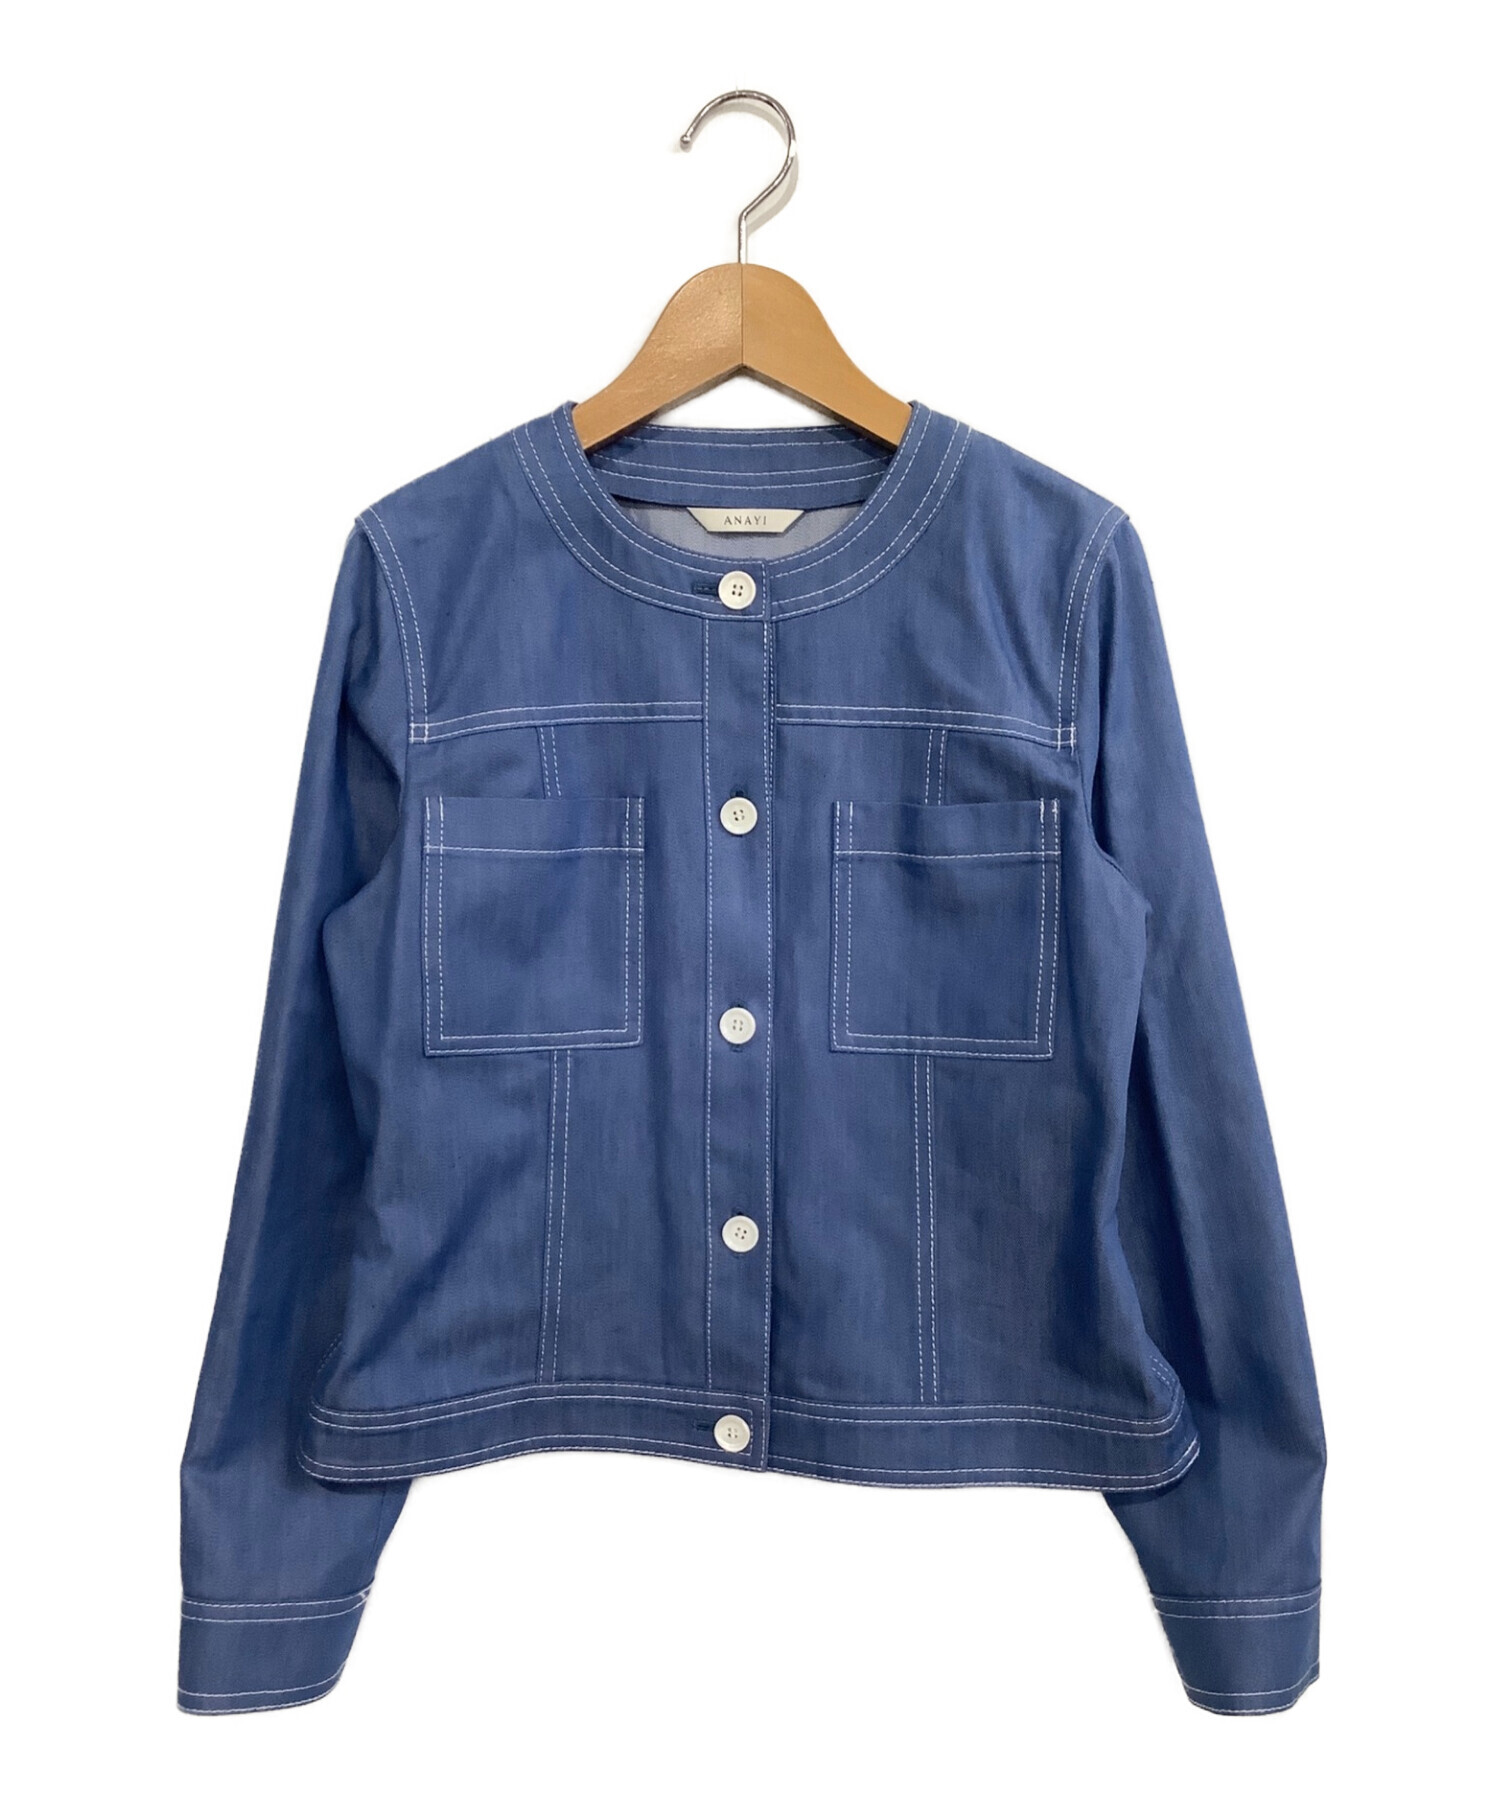 ANAYI (アナイ) デニムライクノーカラージャケット ブルー サイズ:38